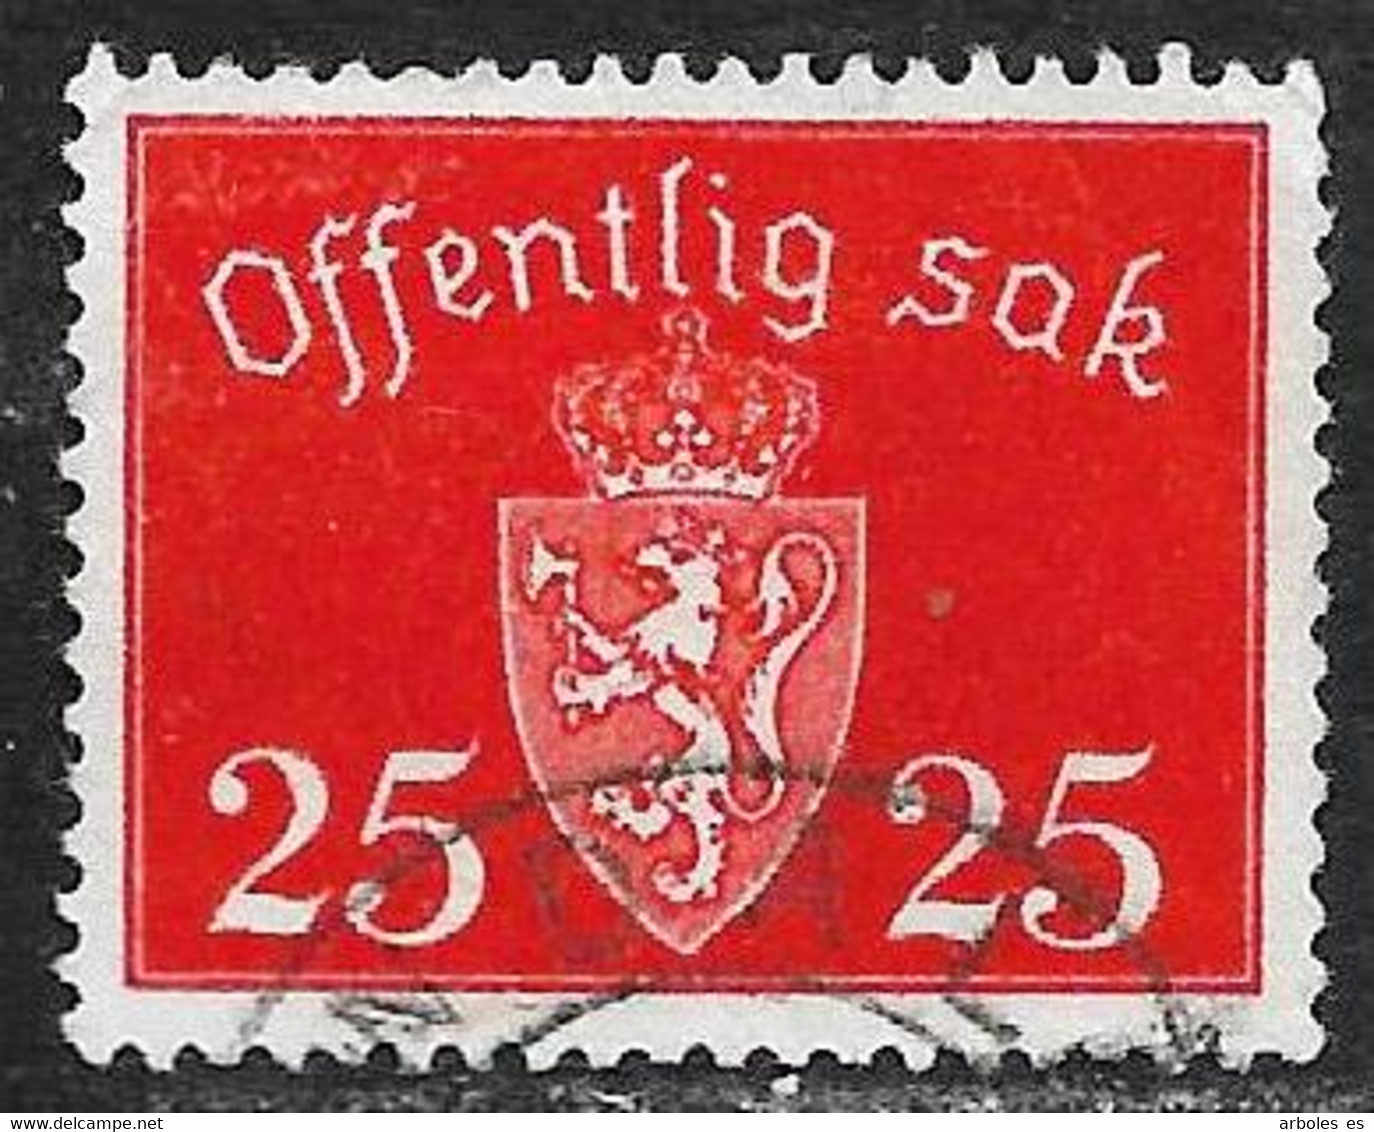 Noruega - Sellos De Servicios - Año1946 - Catalogo Yvert N.º 0053 - Usado - Servicios - Gebraucht